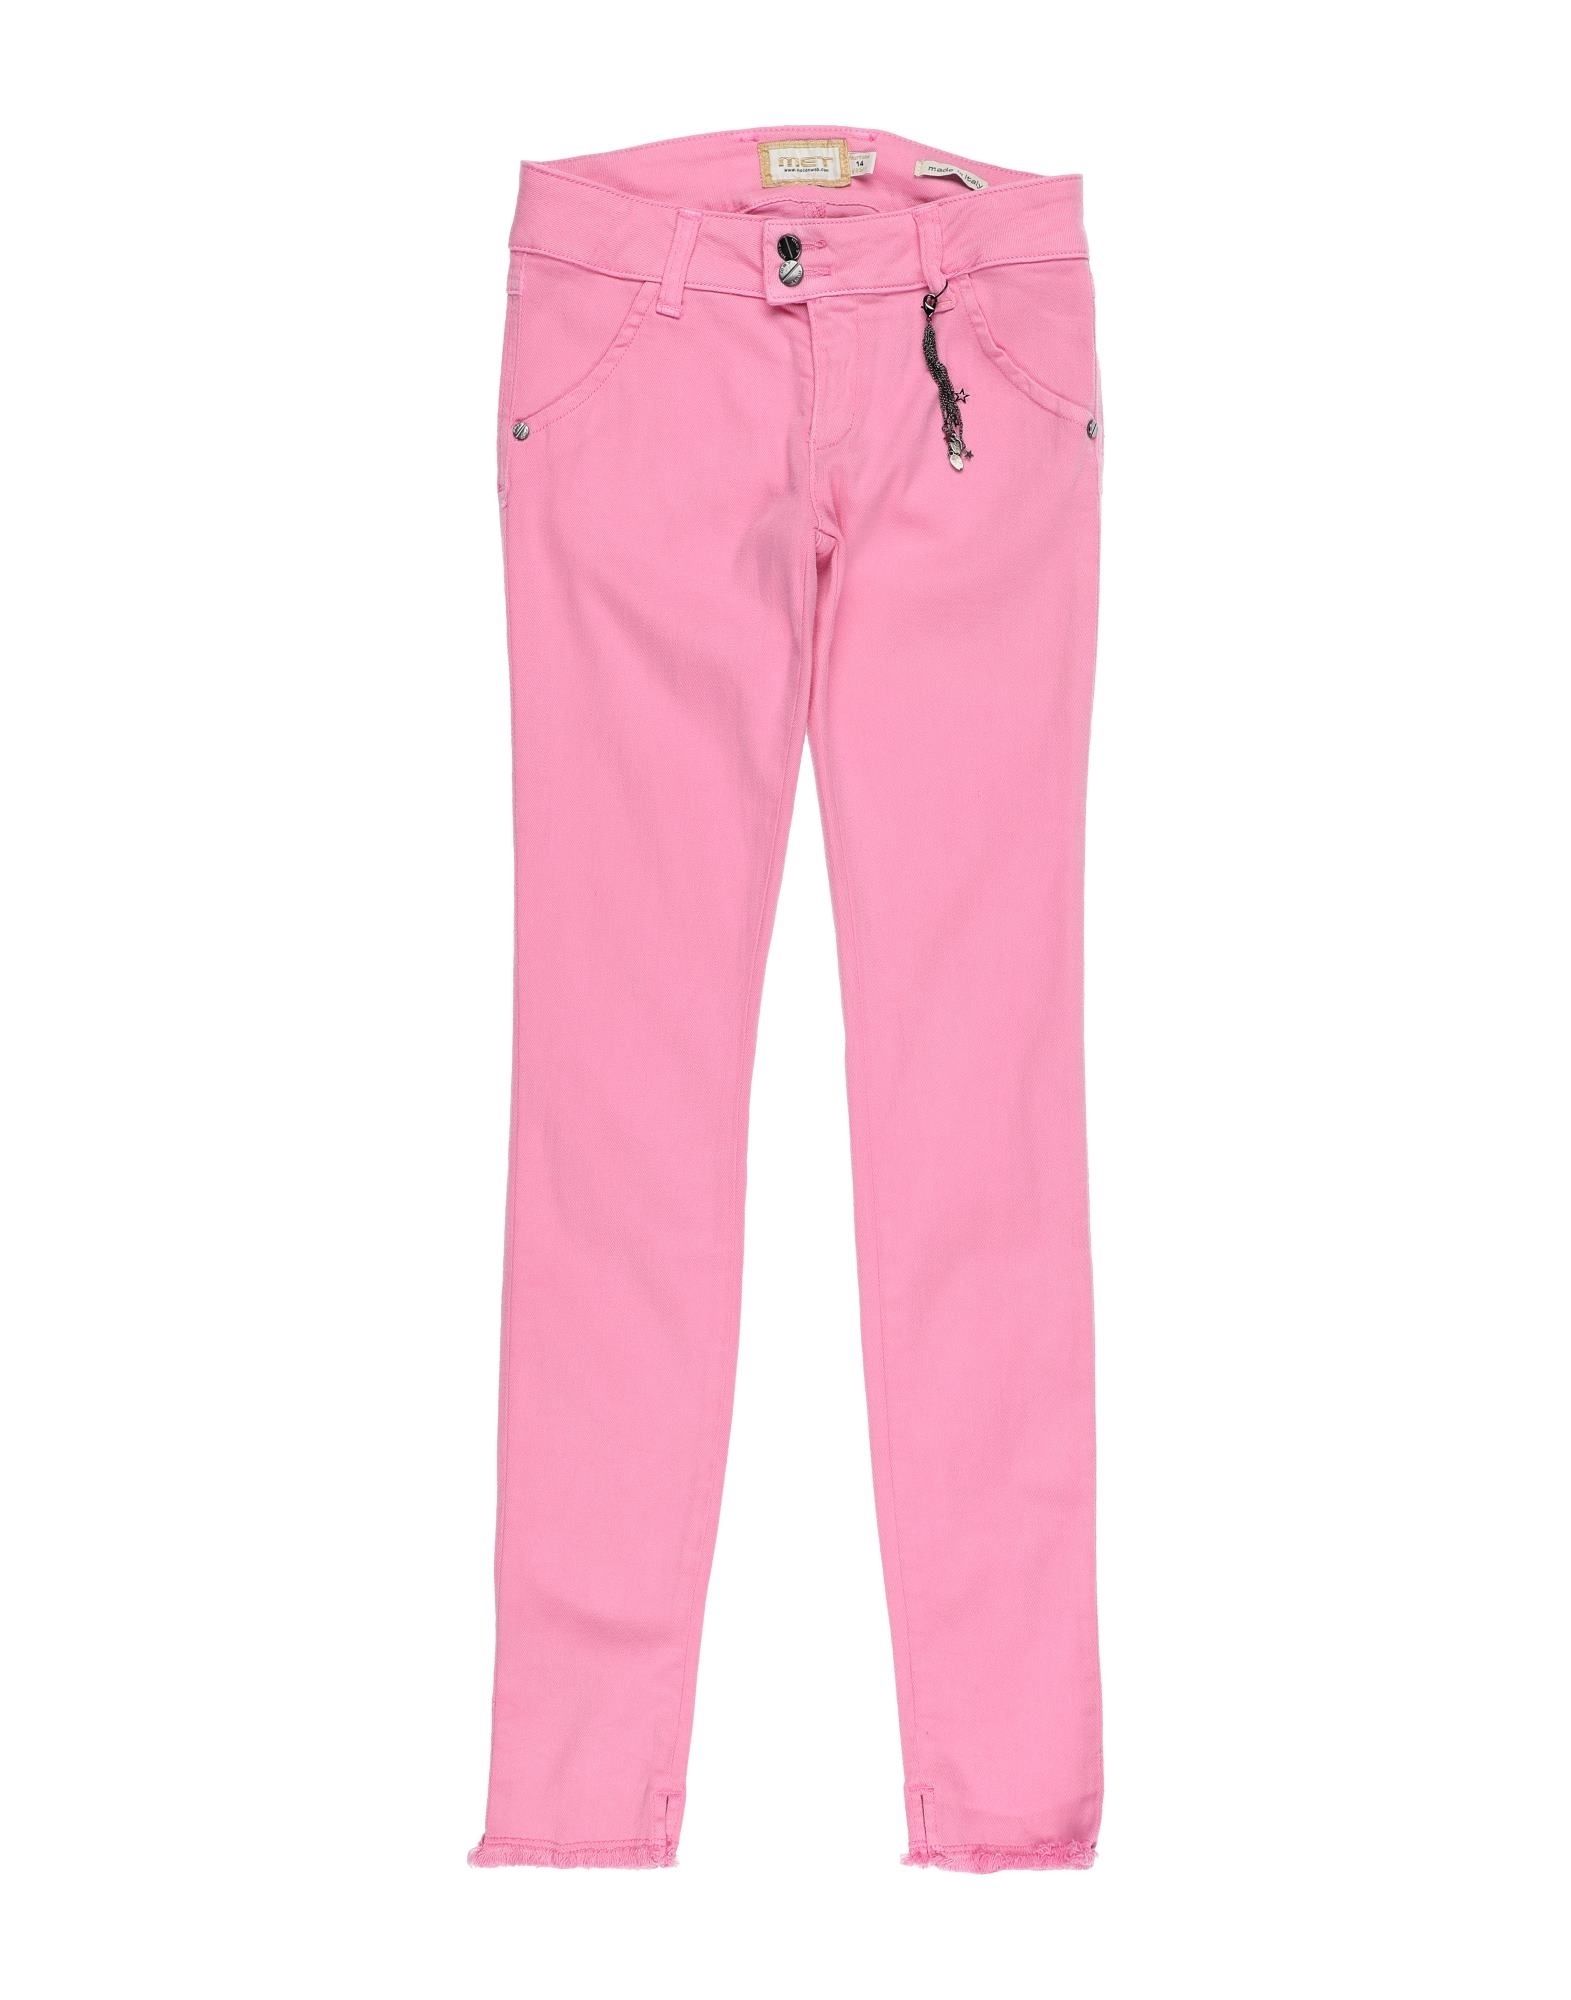 Met Jeans Kids' Casual Pants In Pink